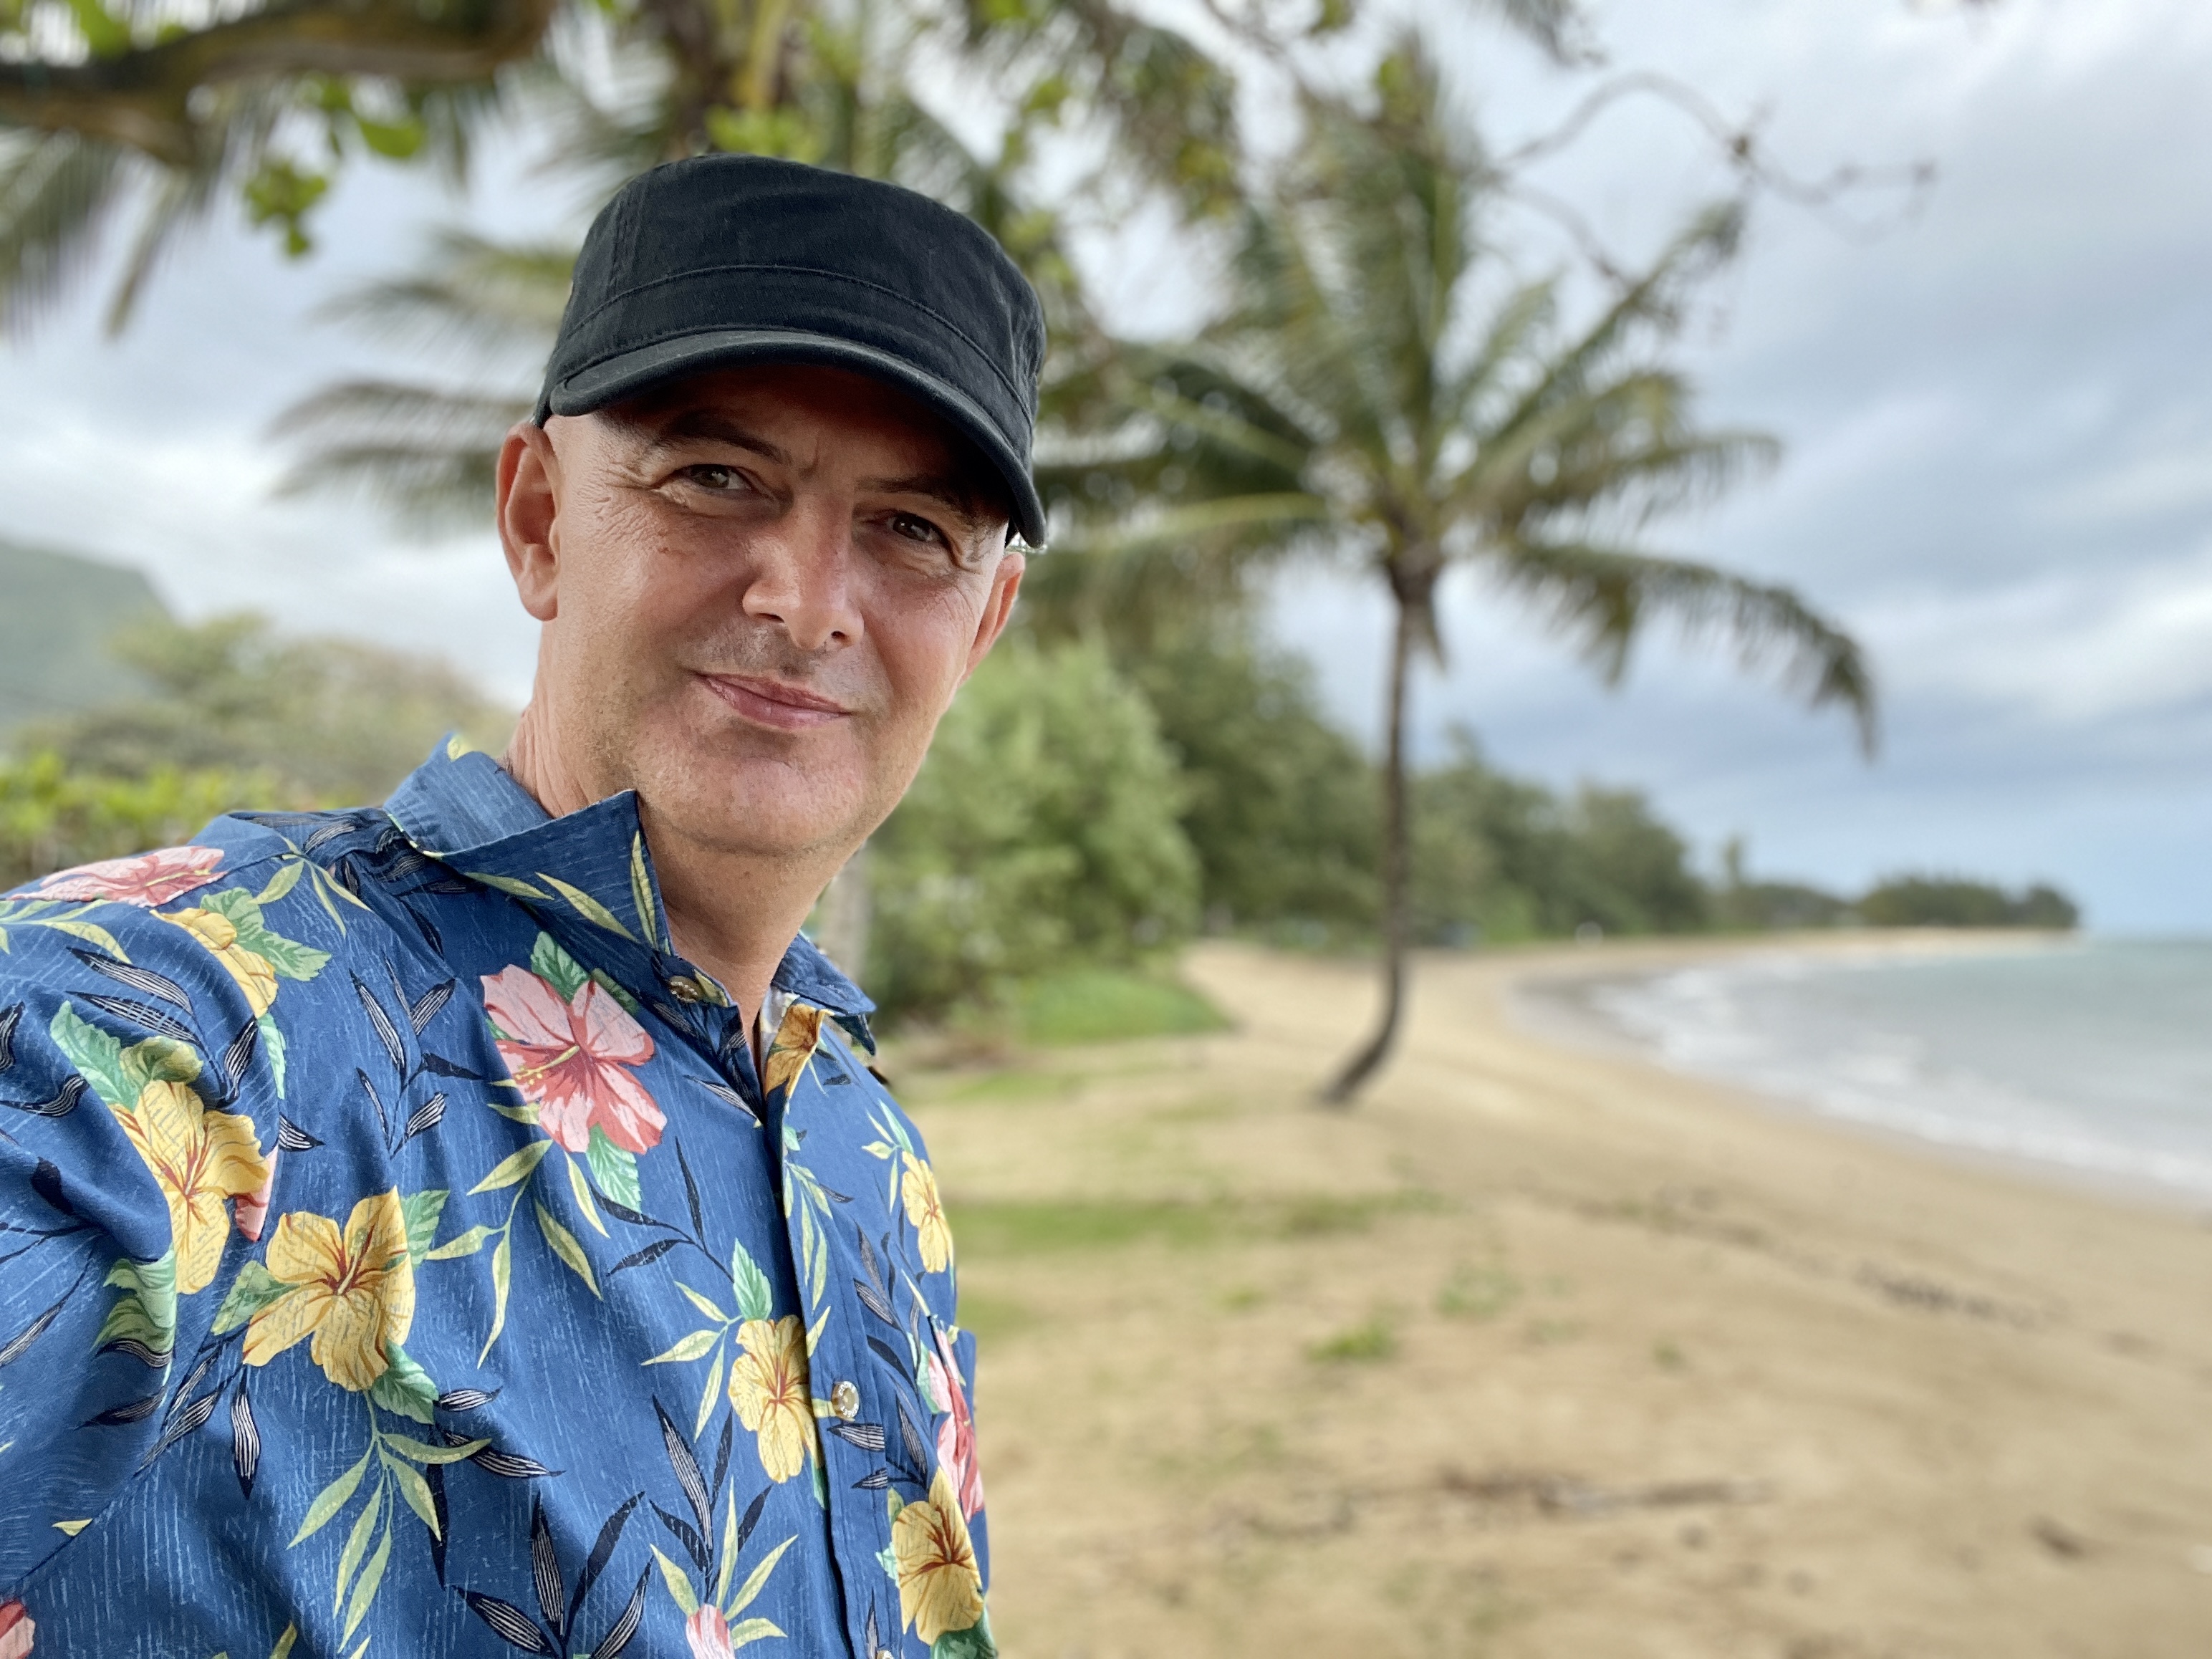 Vujity Tvrtko száz napig itthon lesz, visszaköltözött Hawaiiiról - Blikk